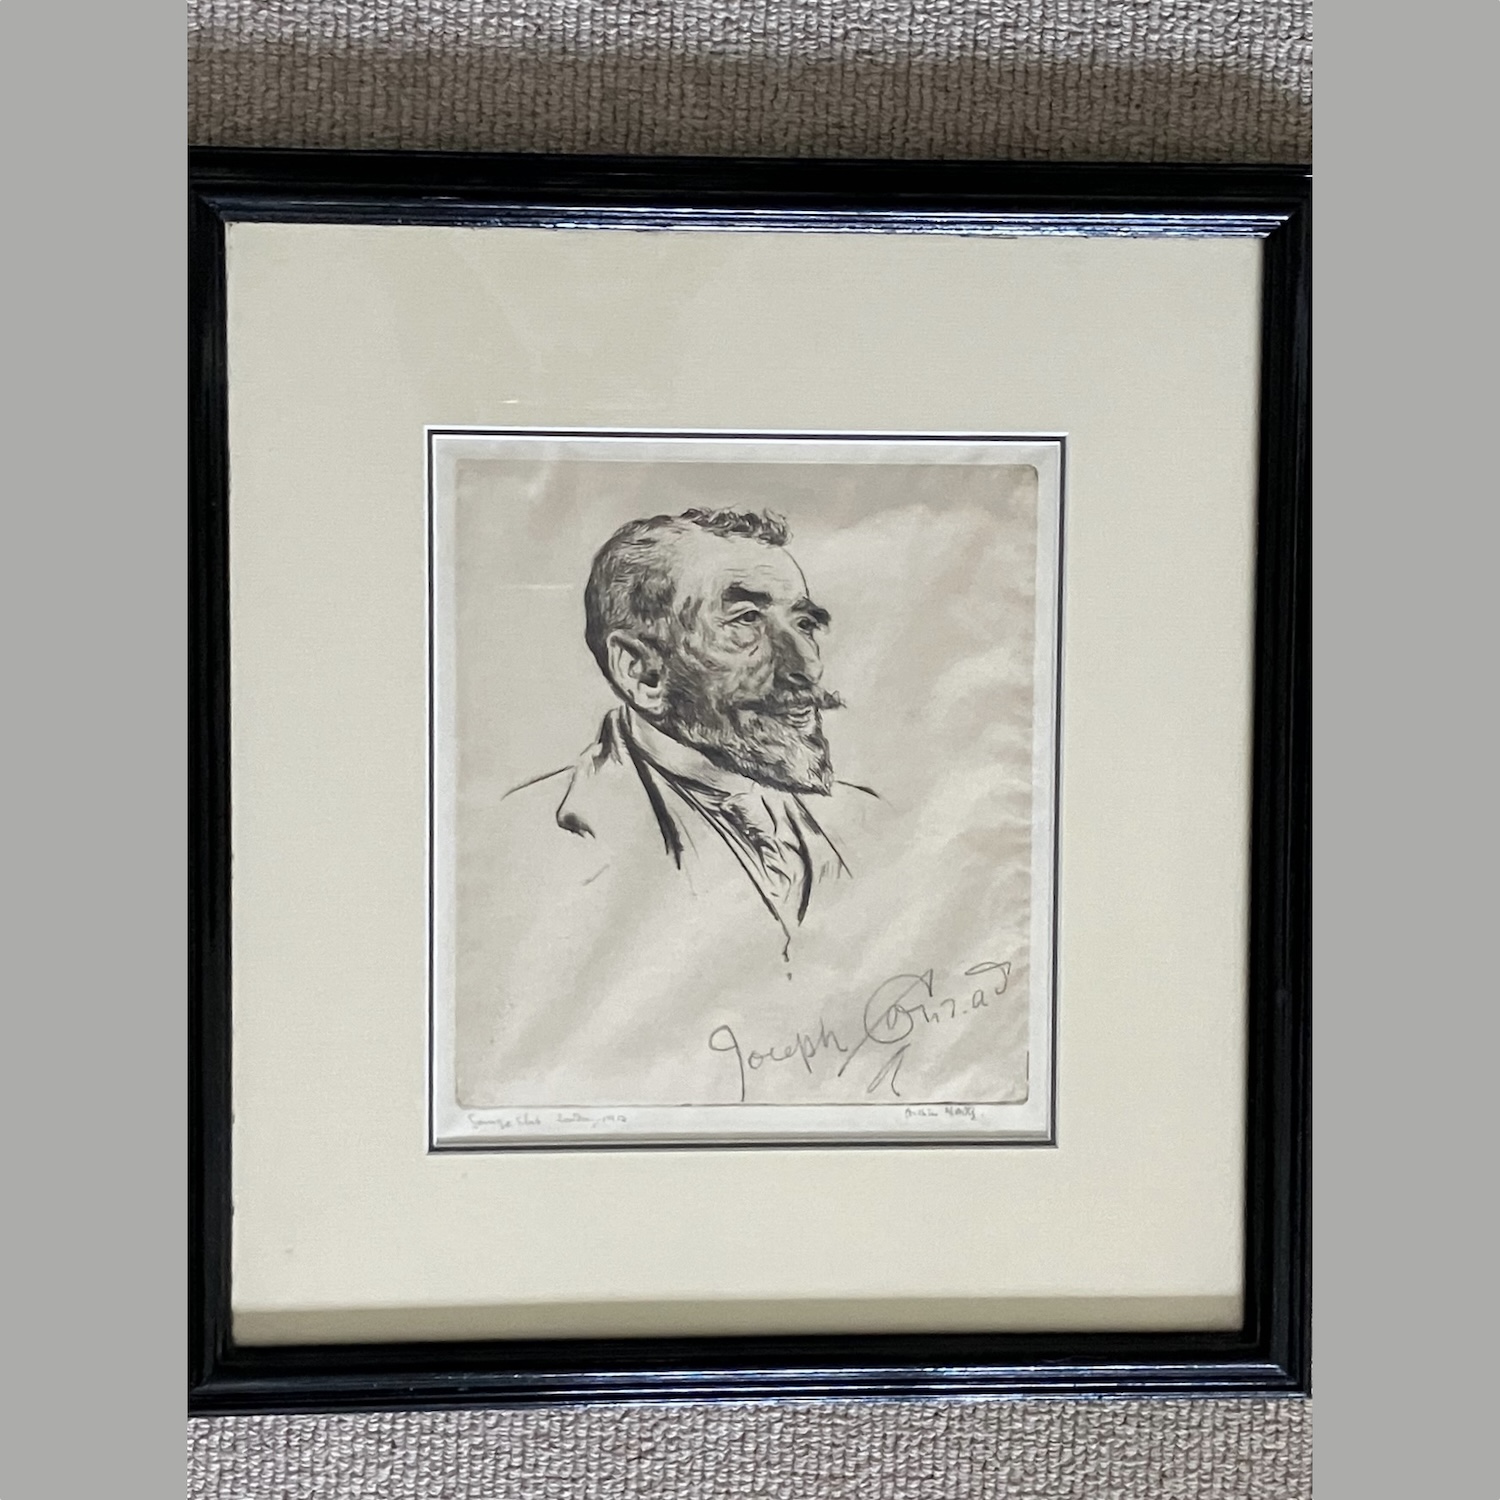 arthur-william-north-english-etching-joseph-conrad-dated-1912-signed-conrad-c424-2